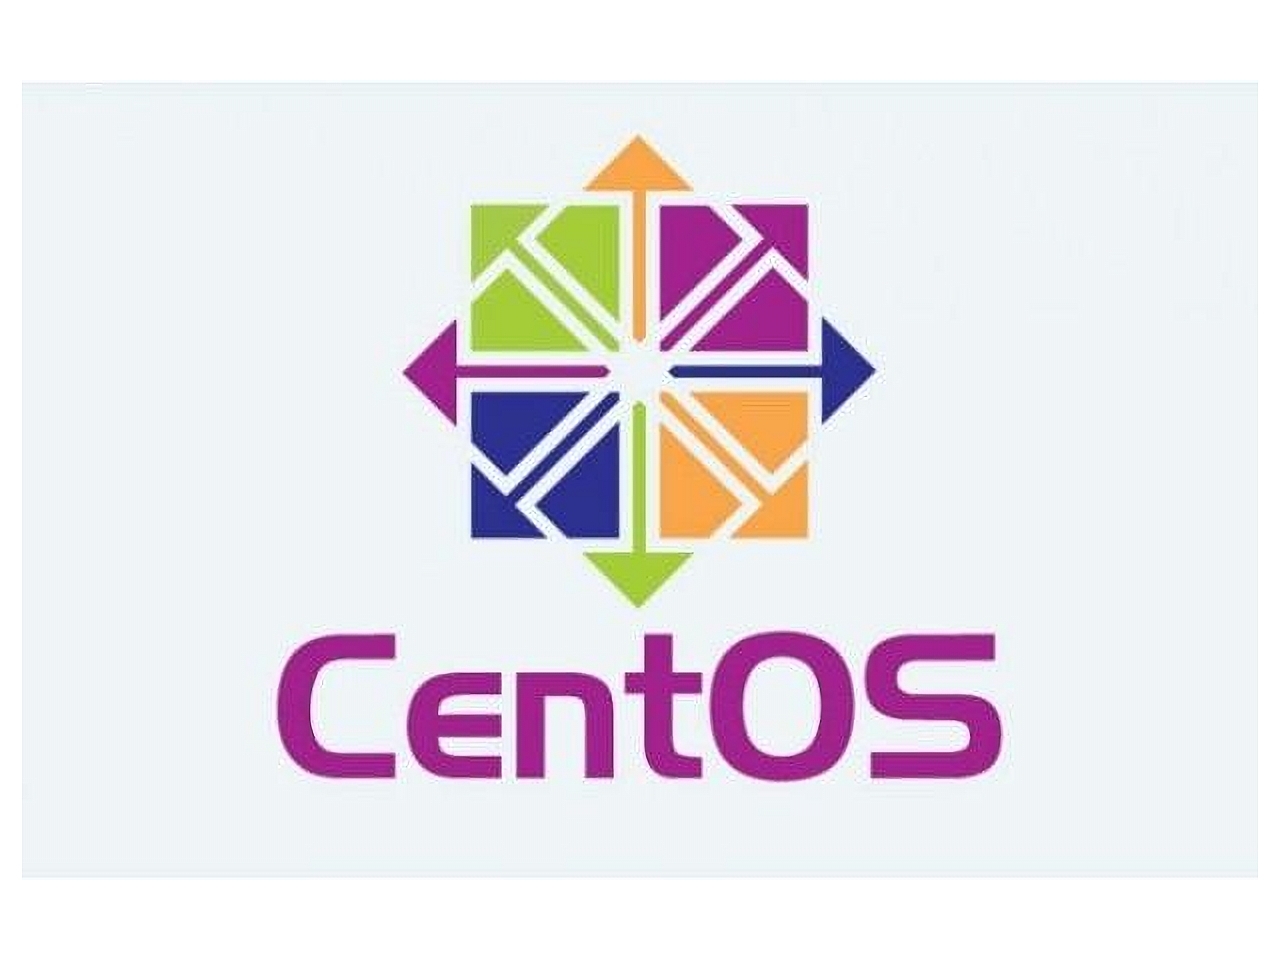 
「CentOS」の開発方針変更--ユーザーの声、レッドハットの見方は